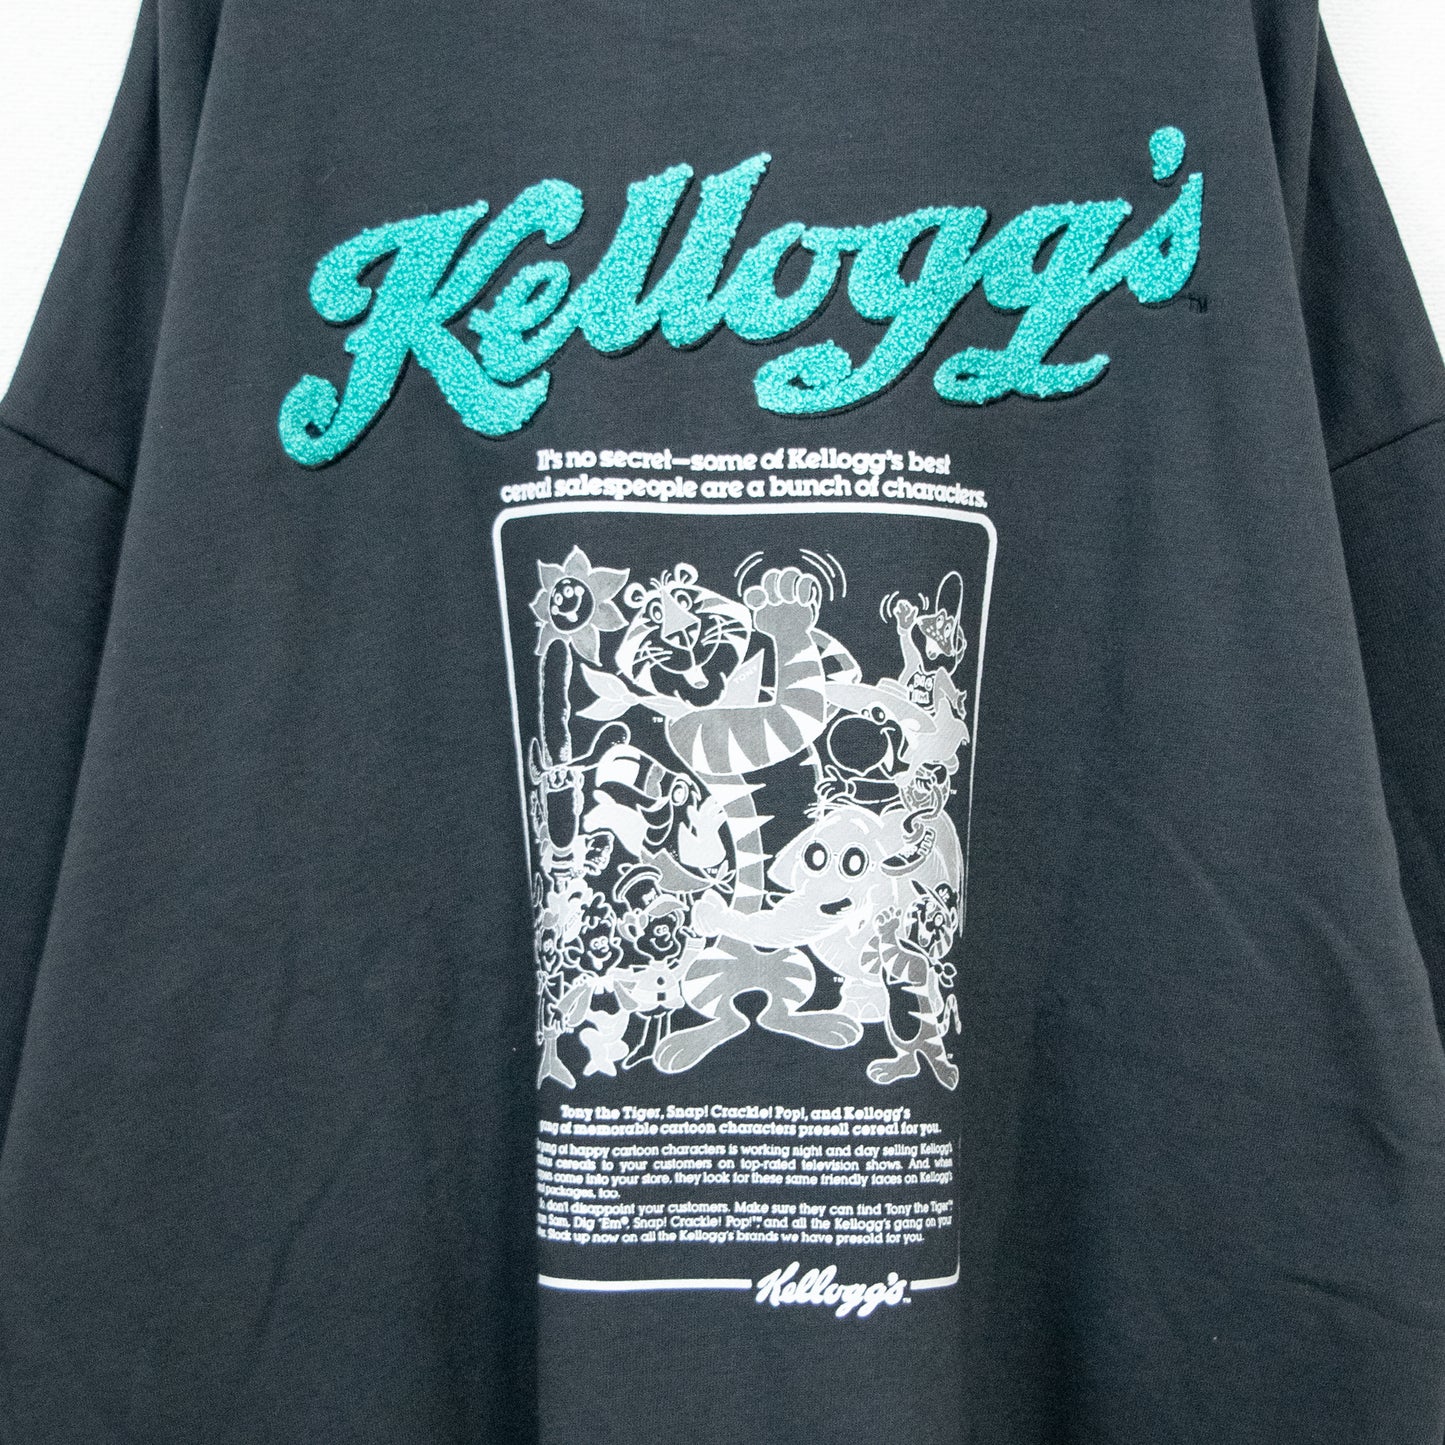 Kellogg's ケロッグ ロゴ刺繍裏毛クルーネック スウェットトップ CHARCOAL チャコール